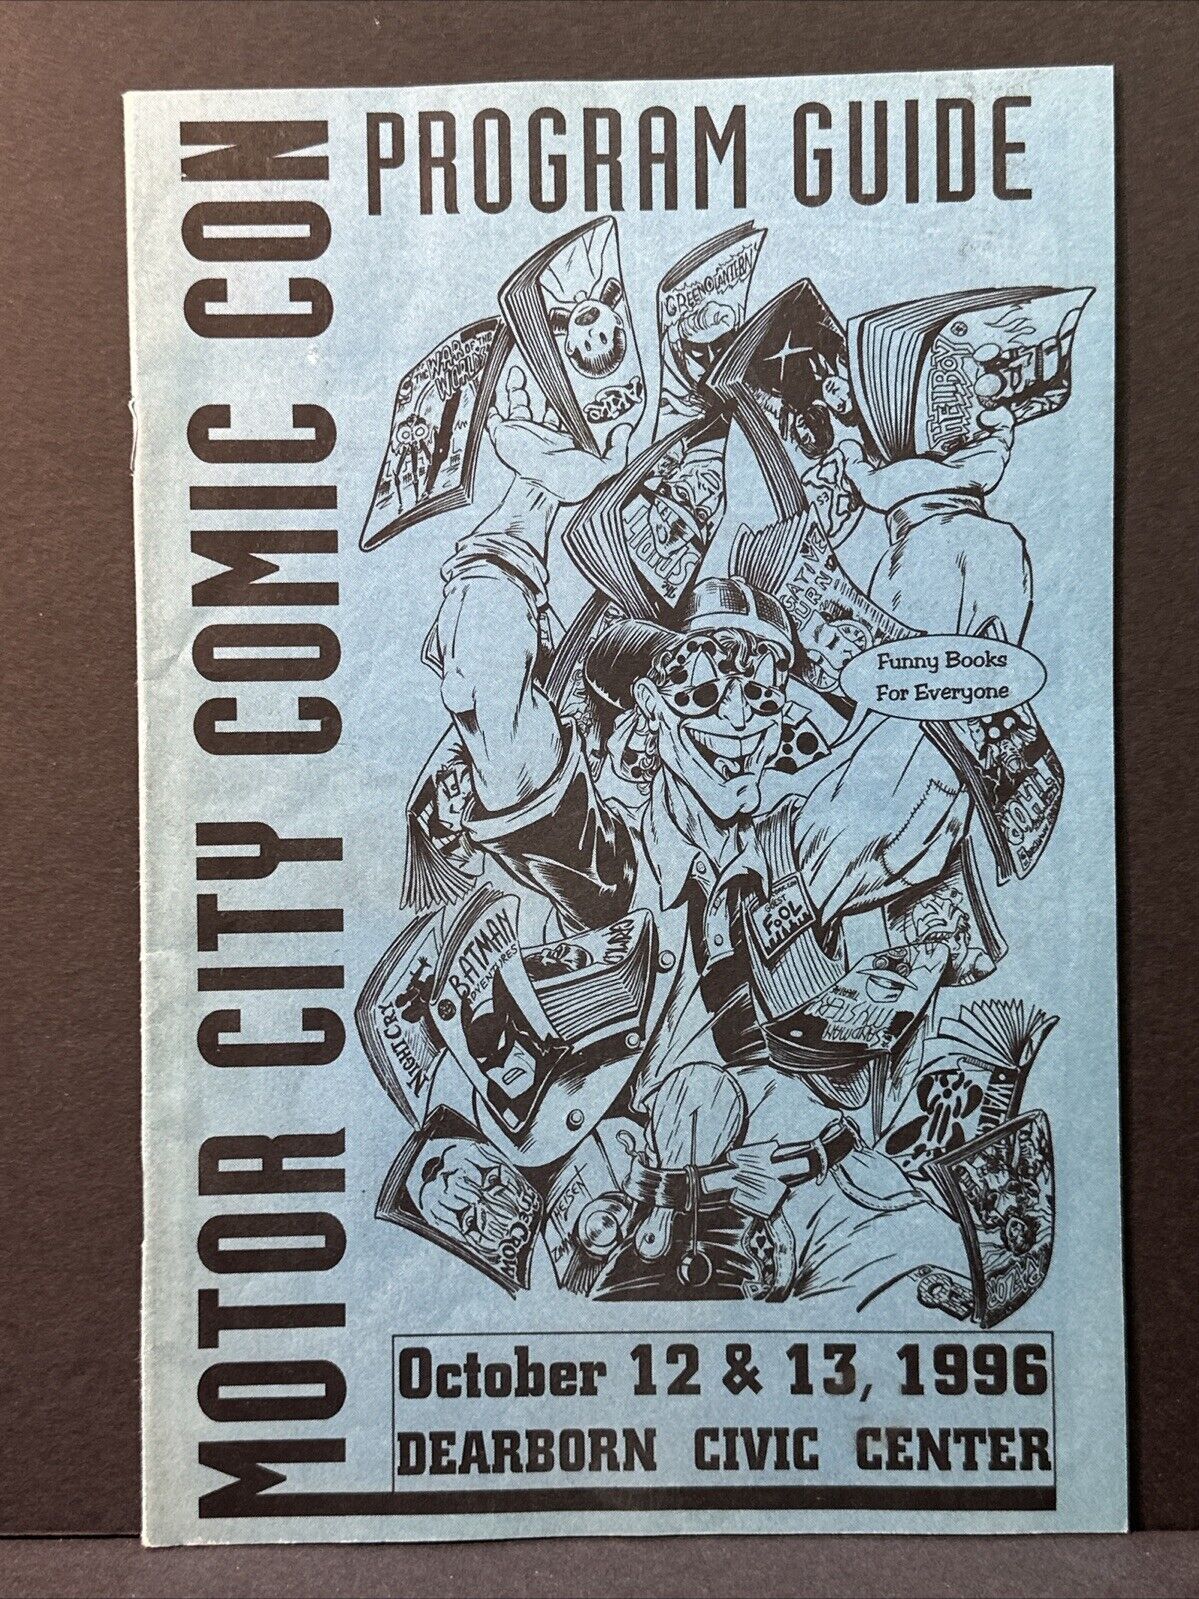 Motor City Comic Con Program Guide 1996 Dearborn Civic Center